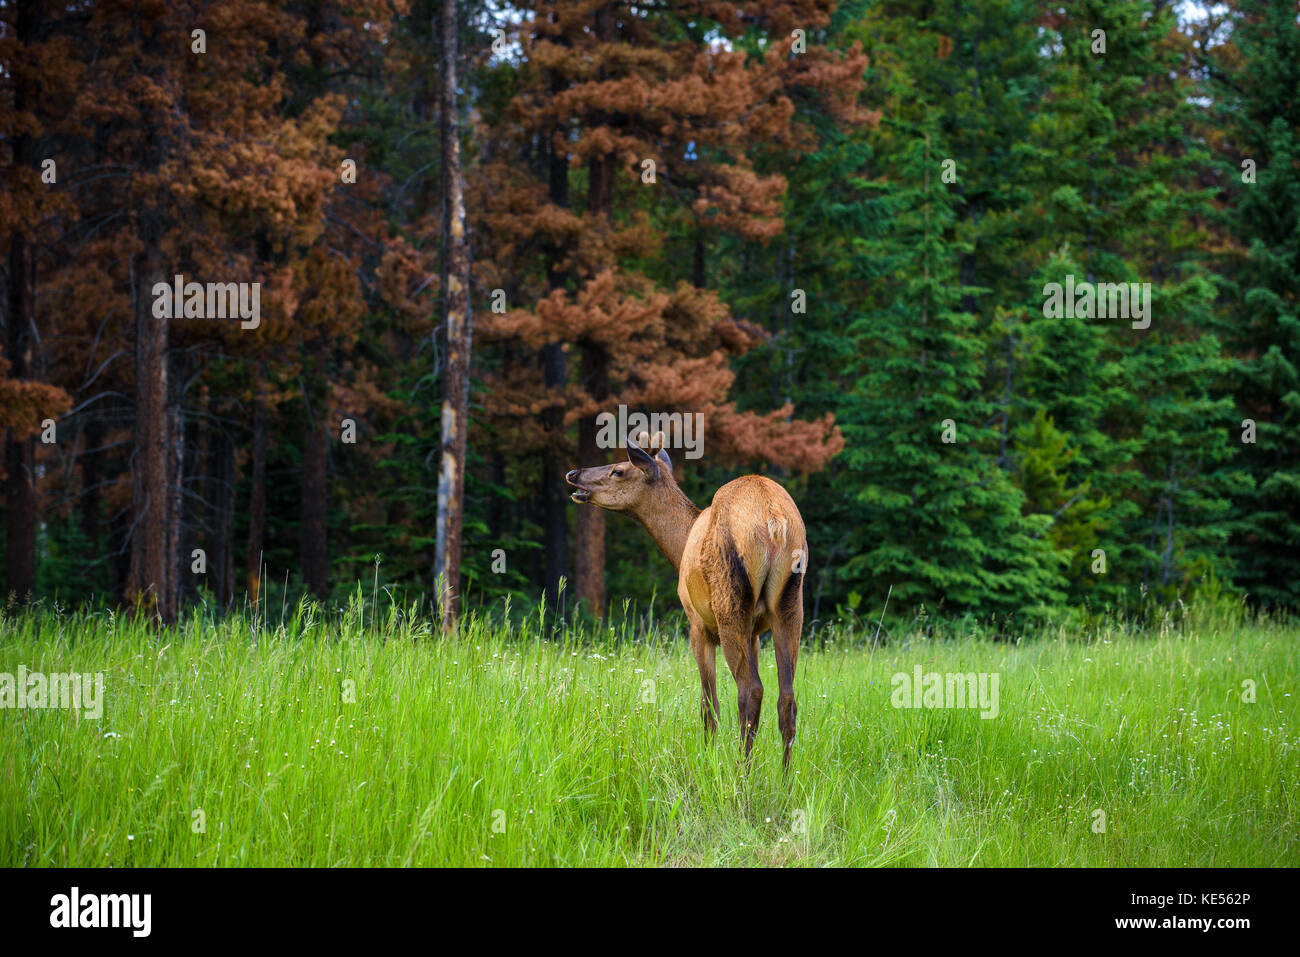 Young male elk, dans le parc national Banff, Alberta, Canada Banque D'Images